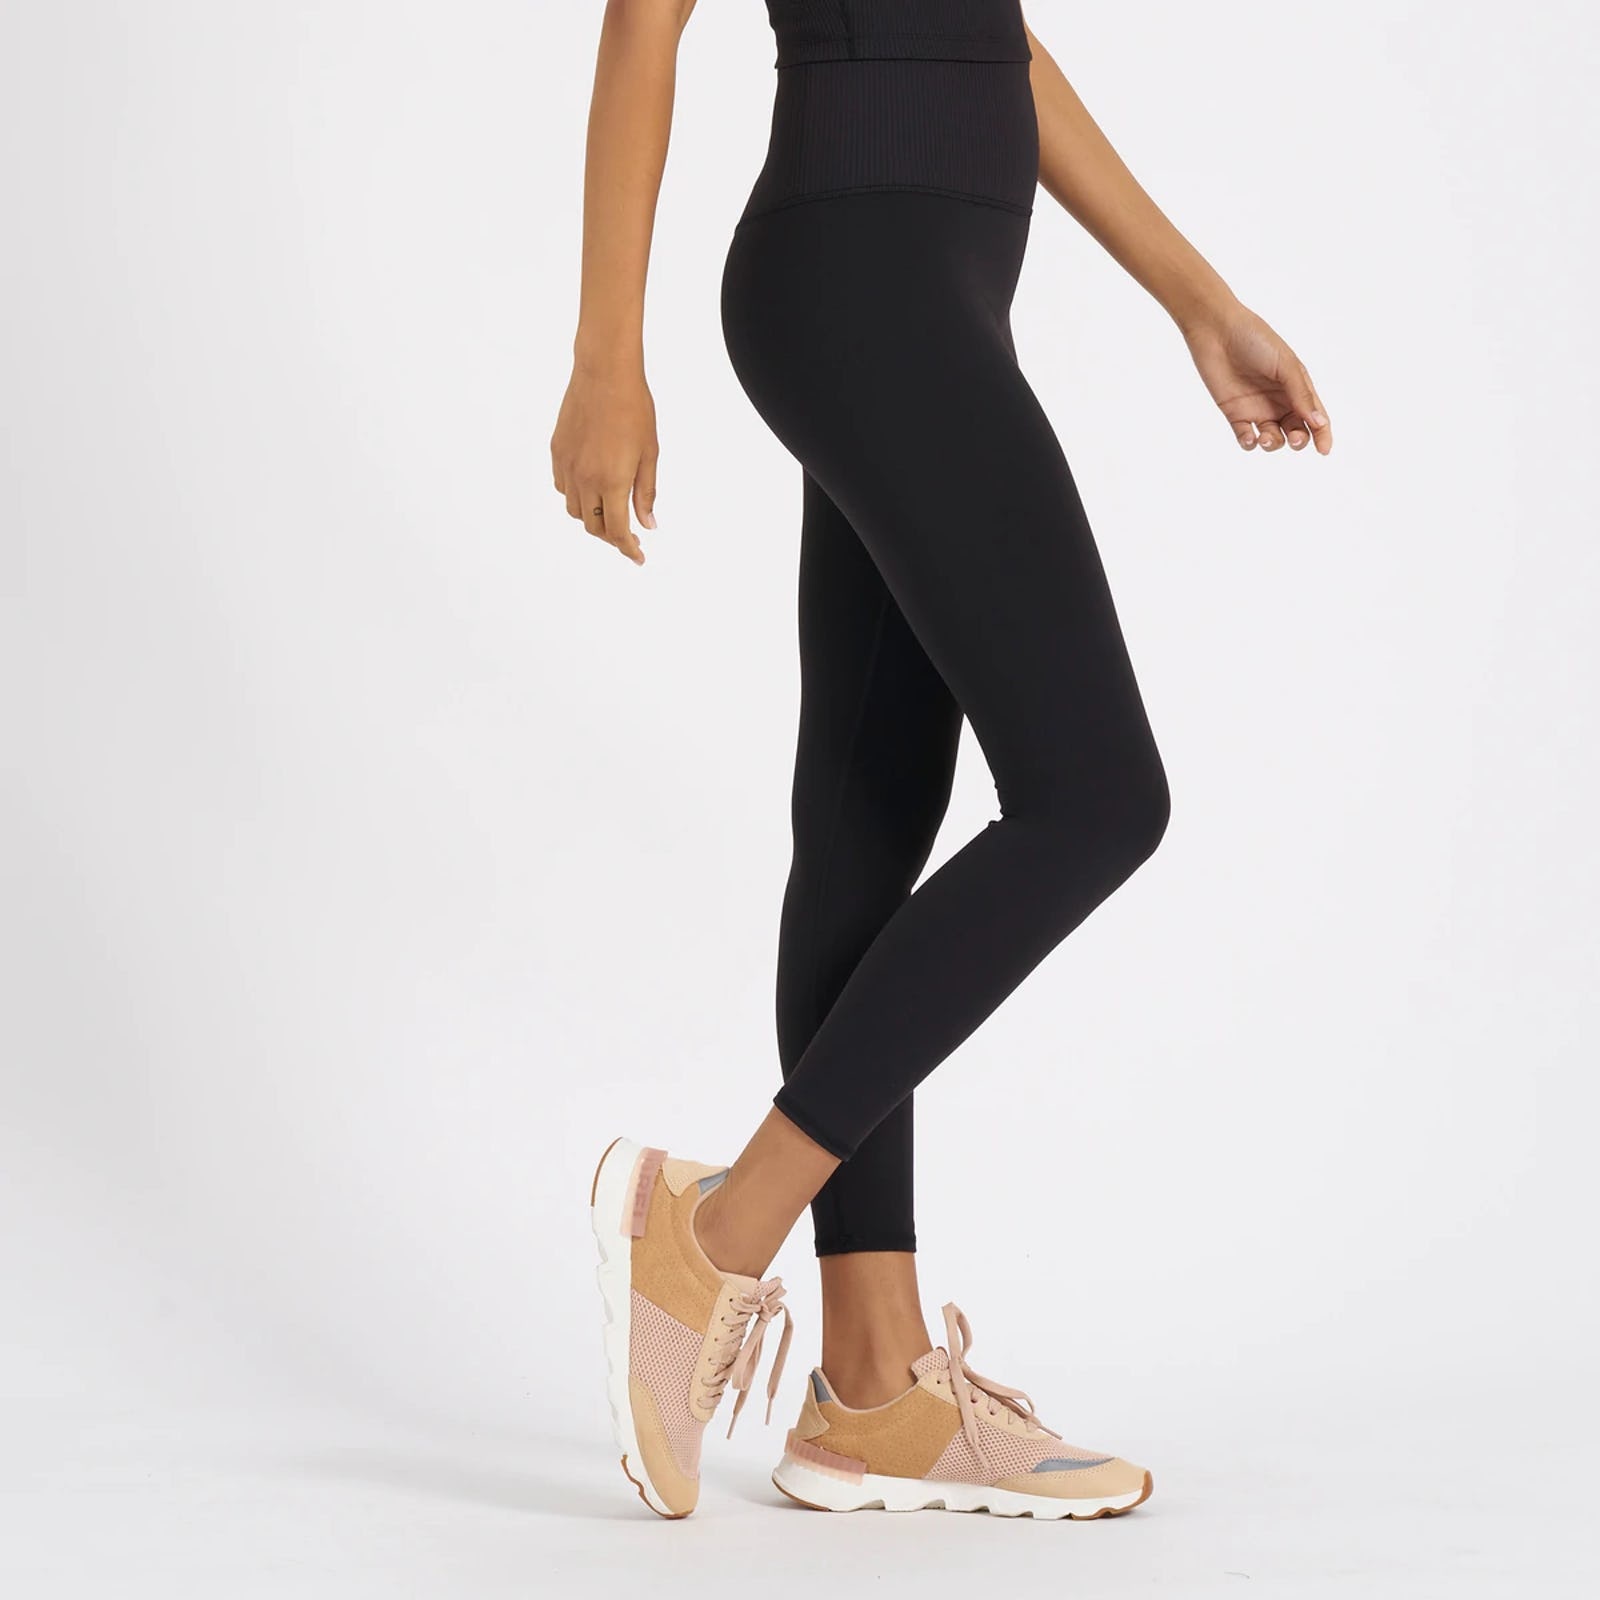 Boody Full Length Legging – The Studio On Main Pilates & Yoga